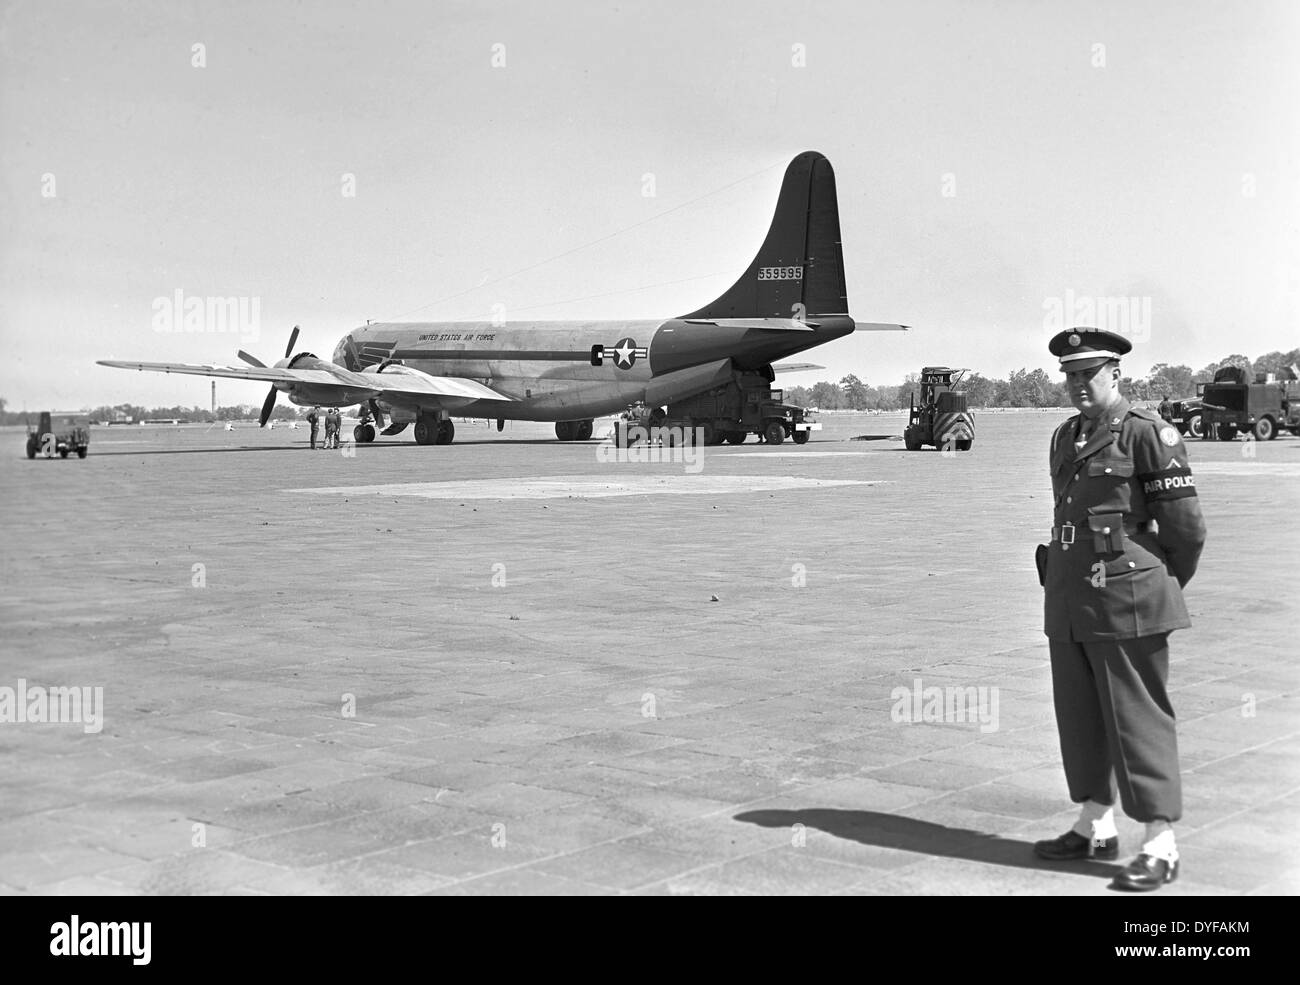 Eine Boeing b-29 Superfortress, ein Langstrecken-Bomber von der US Air Force auf dem Flughafen Tempelhof in Berlin, Deutschland, 1949. Die größten und leistungsfähige Bomber aus dem zweiten Weltkrieg diente auch im August 1945 die Atombomben auf Hiroshima und Nagasaki fallen. Foto: Zbarchiv - NO-Draht-SERVICE Stockfoto